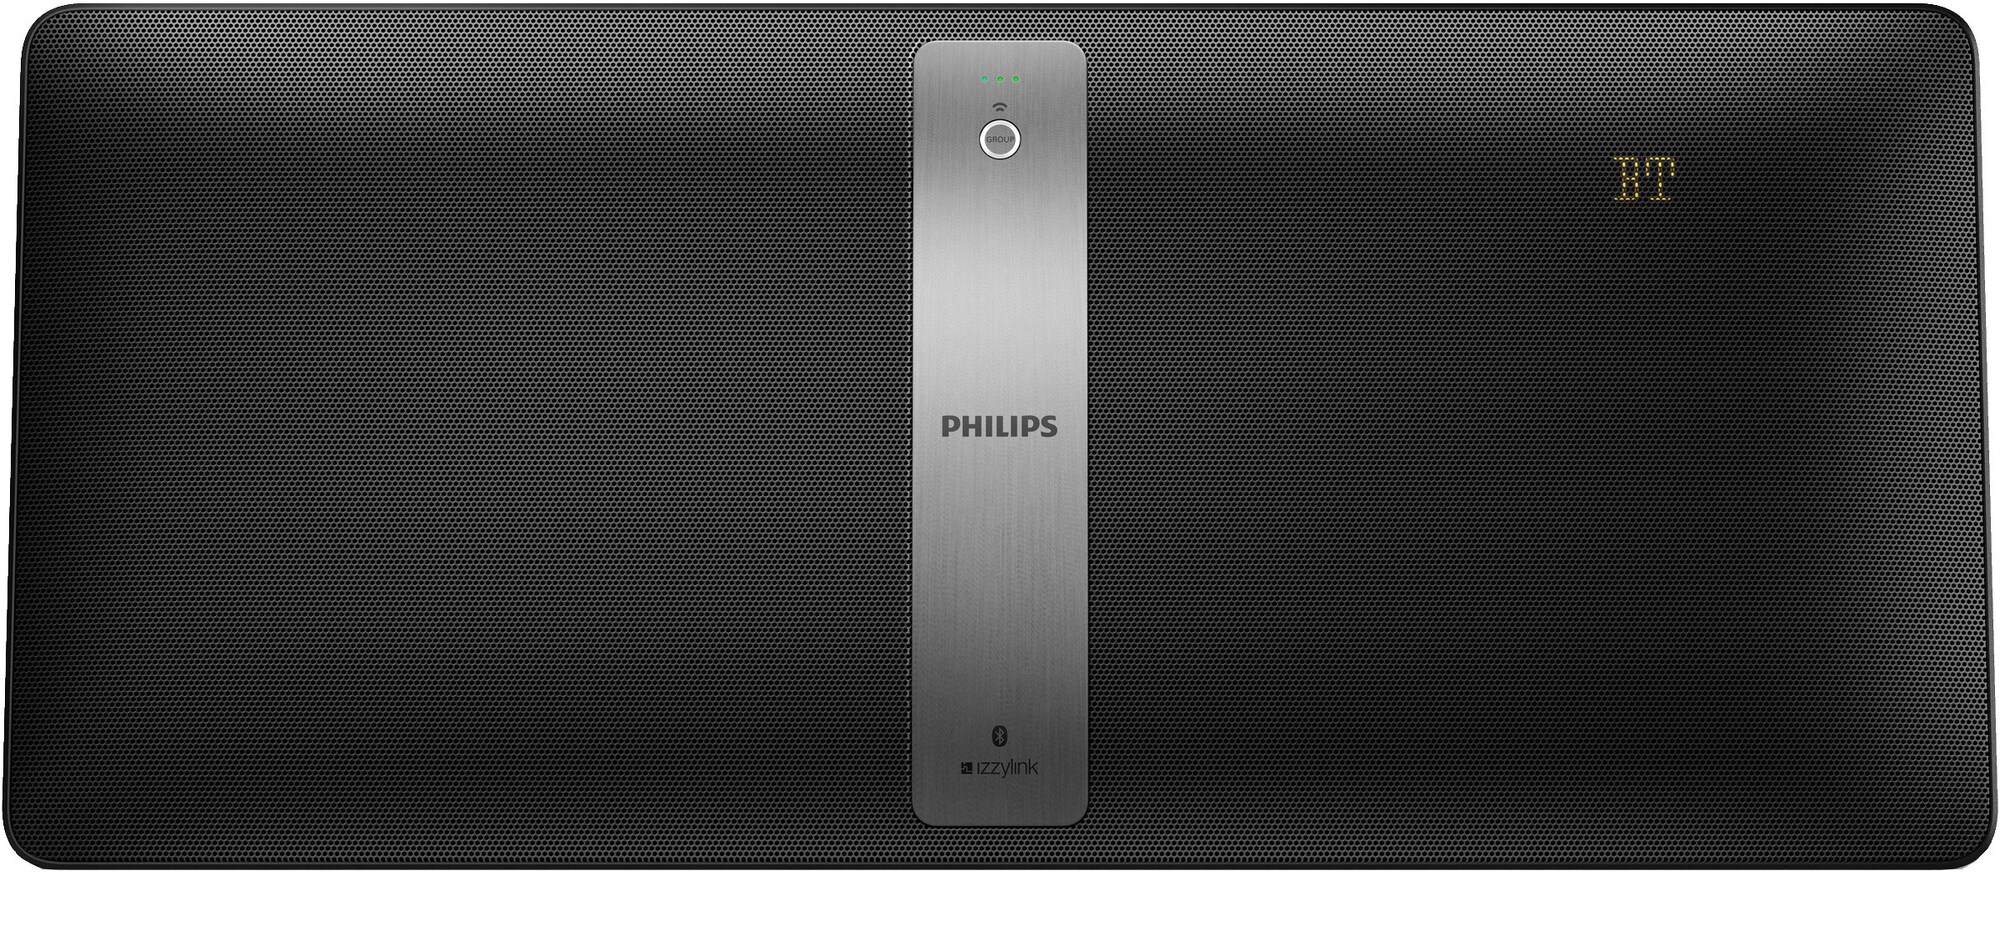 Philips Izzy BM50 multiroom høyttaler (sort) - WiFi-høyttaler & Multiroom -  Elkjøp